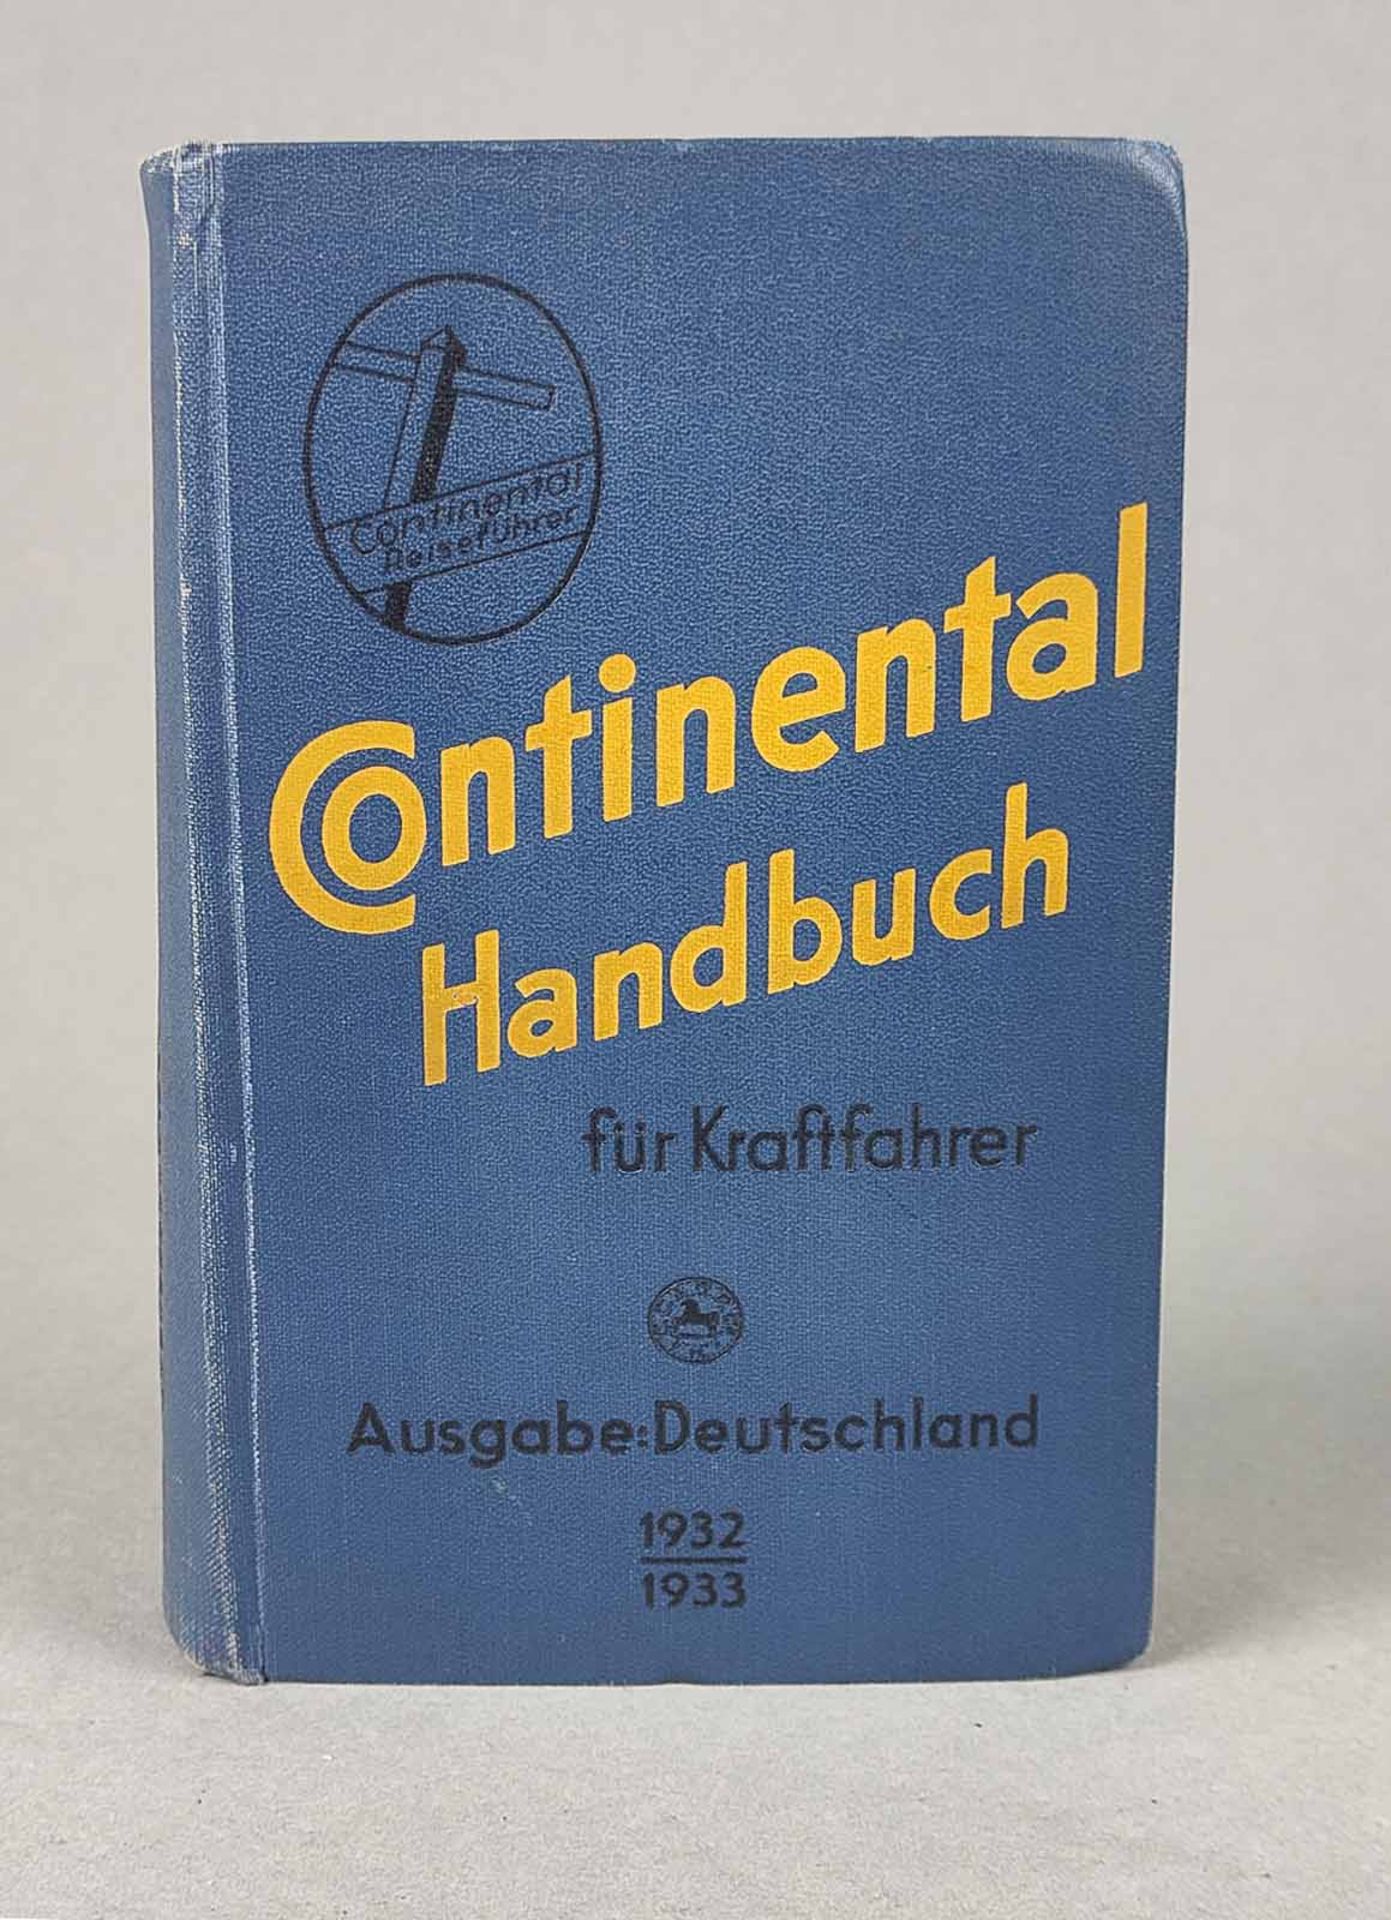 Continental Handbuch für Kraftfahrer